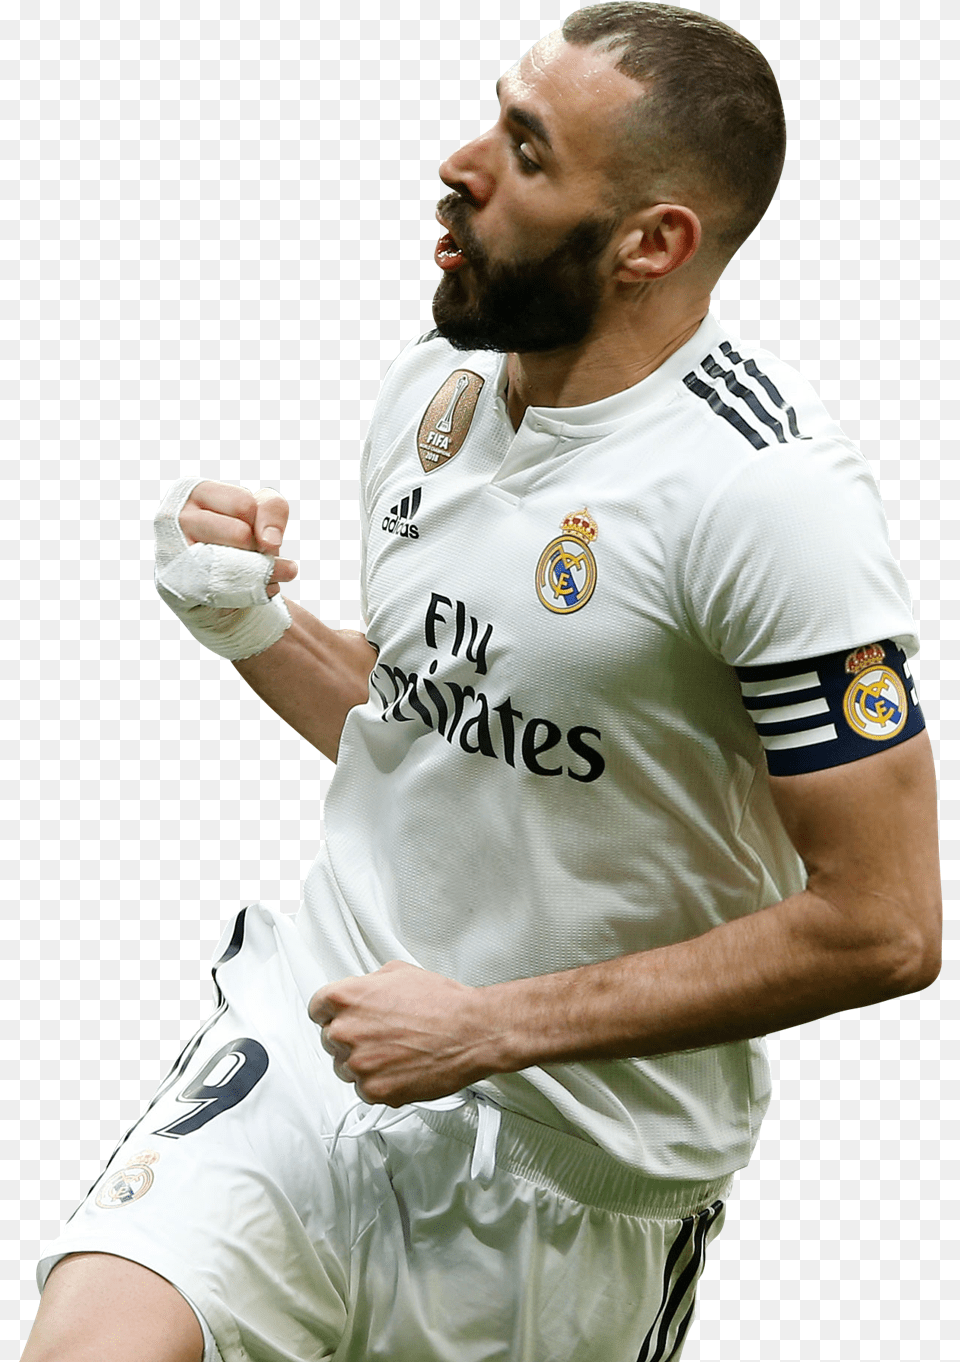 Karim Benzemarender Getafe Vs Real Madrid 2019, Shirt, Person, Hand, Finger Png